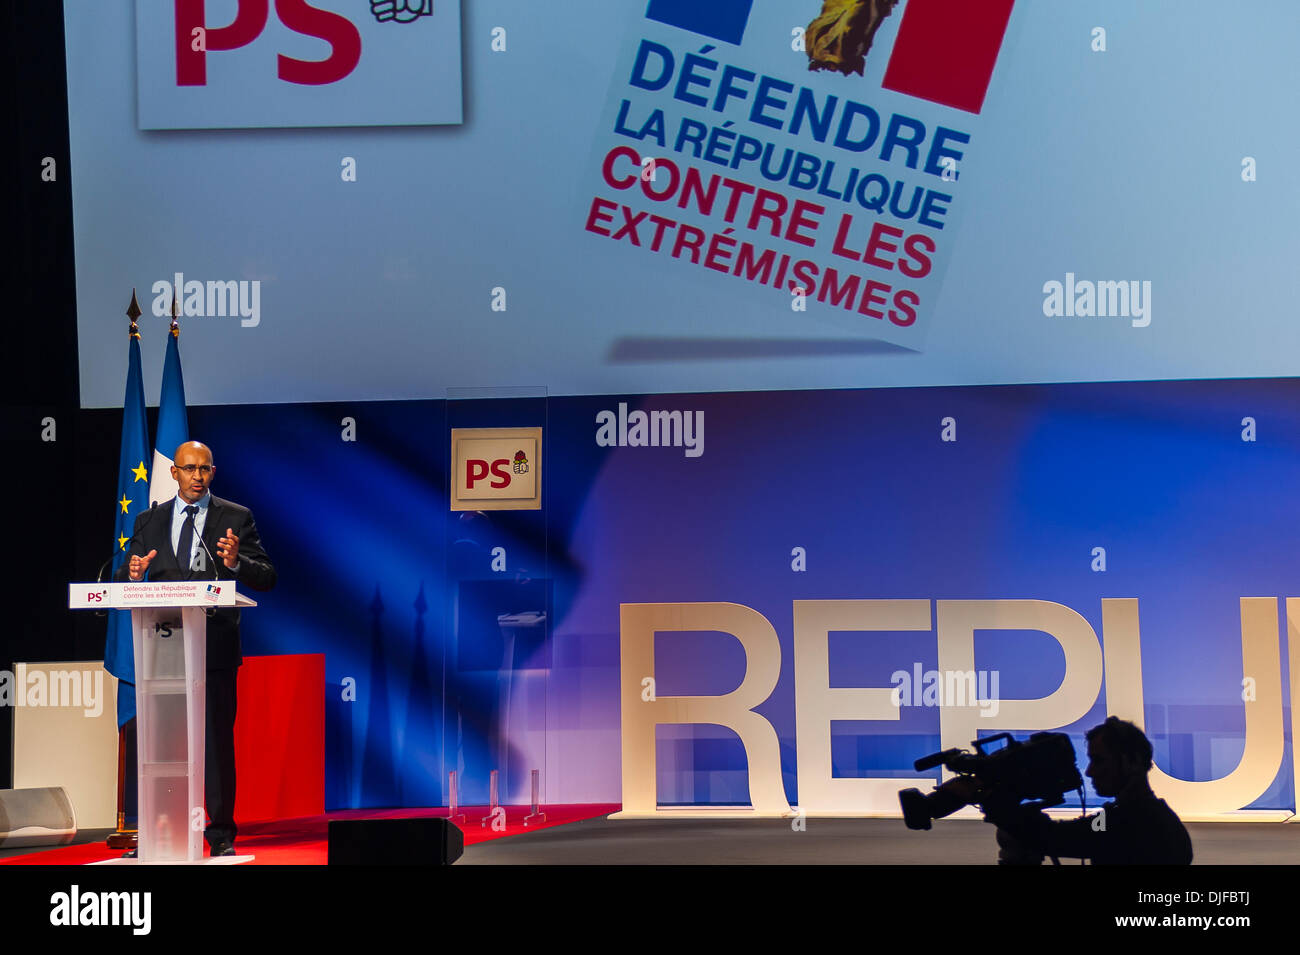 Parigi, Francia, Politica riunione del Partito Socialista del lavoro francese, contro l'estrema destra, Harlem Desir, discorso pronunciato Foto Stock